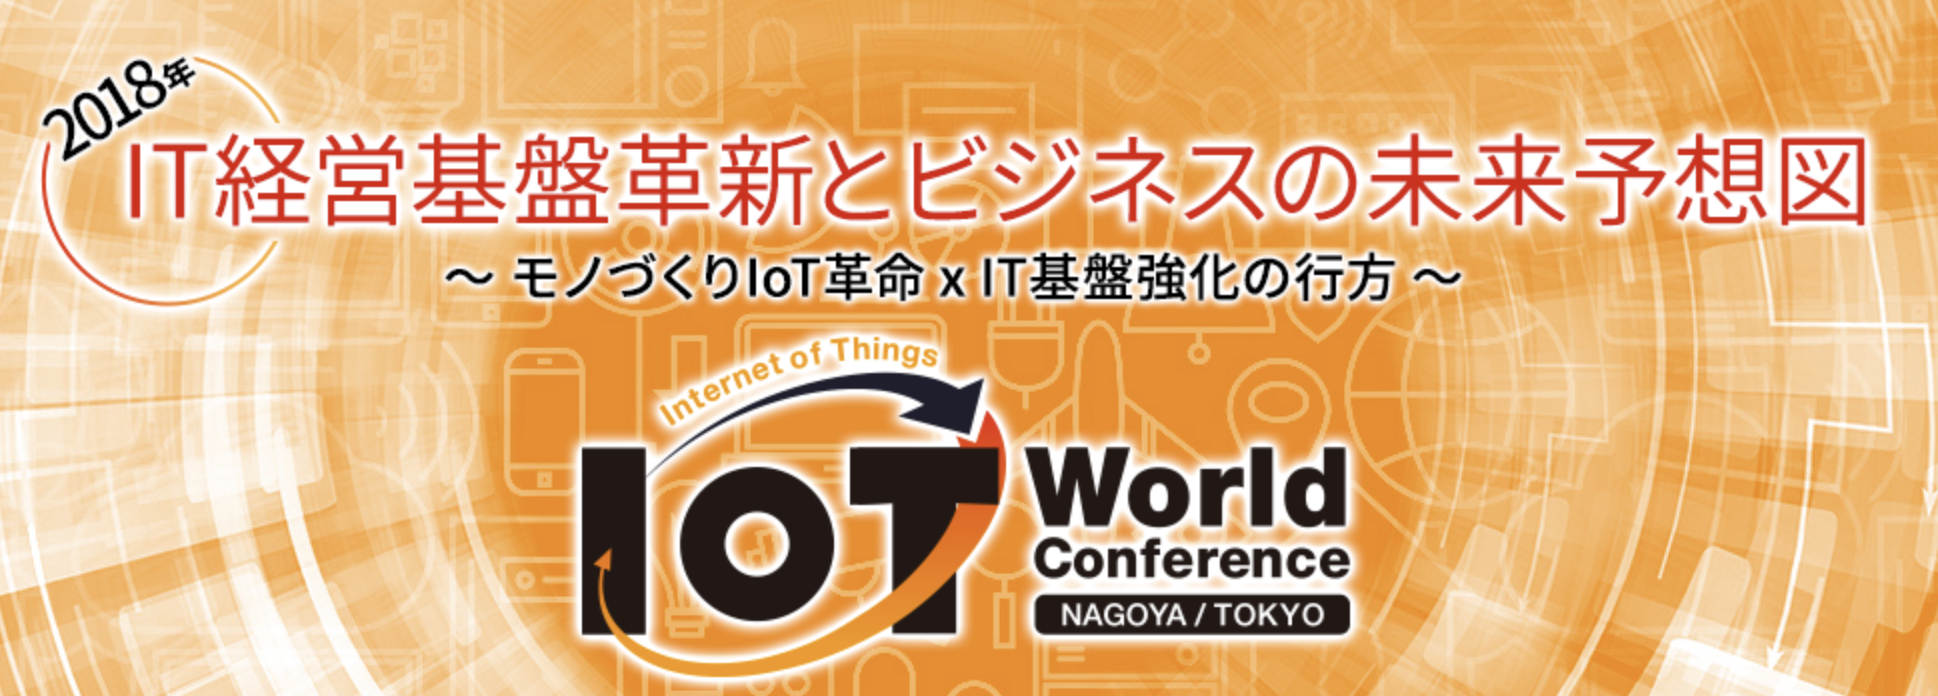 IoT World Conference 2018 にて弊社代表石井が講演を行いました